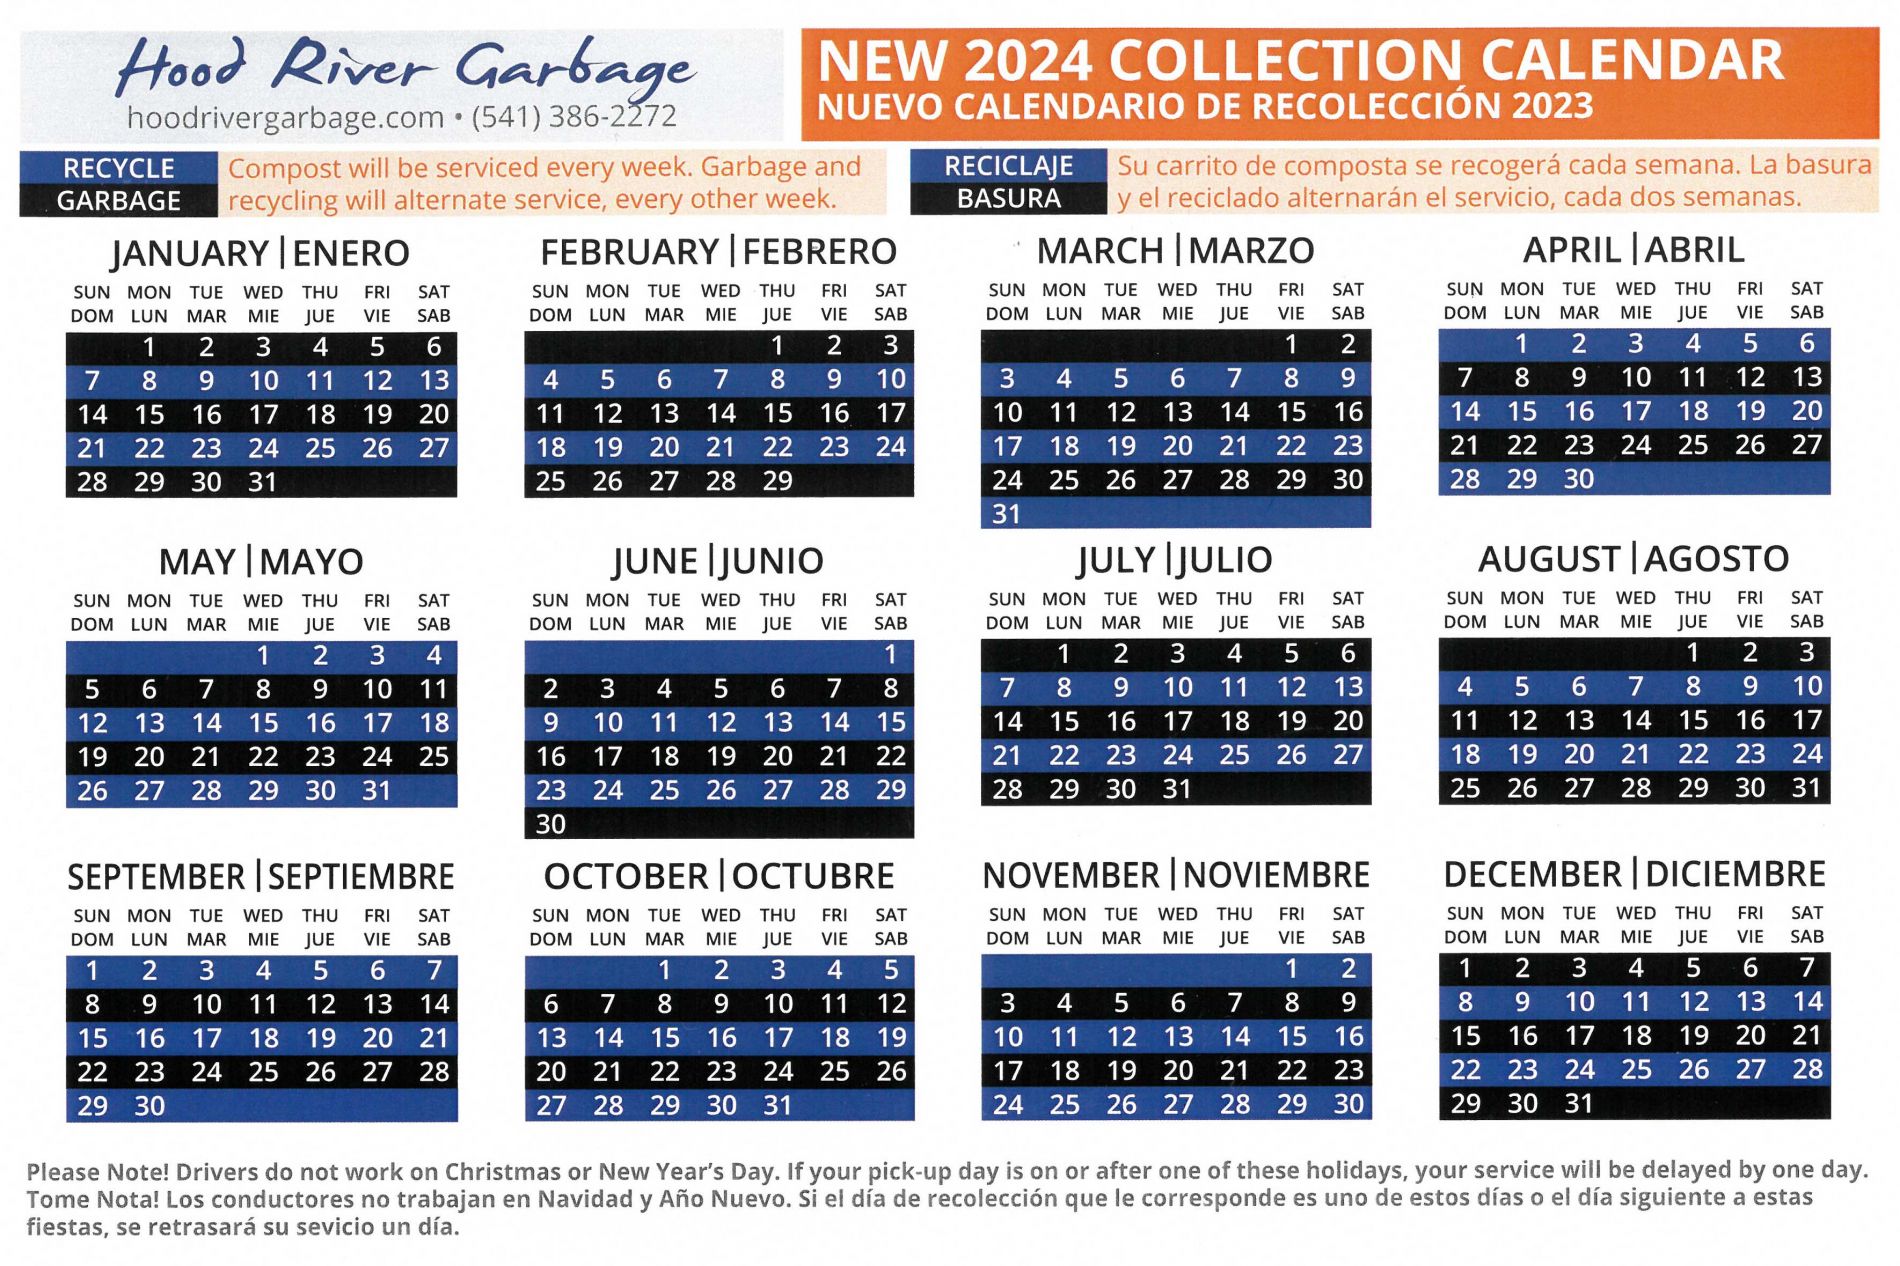 Hood River City 2024 Collection Calendar.